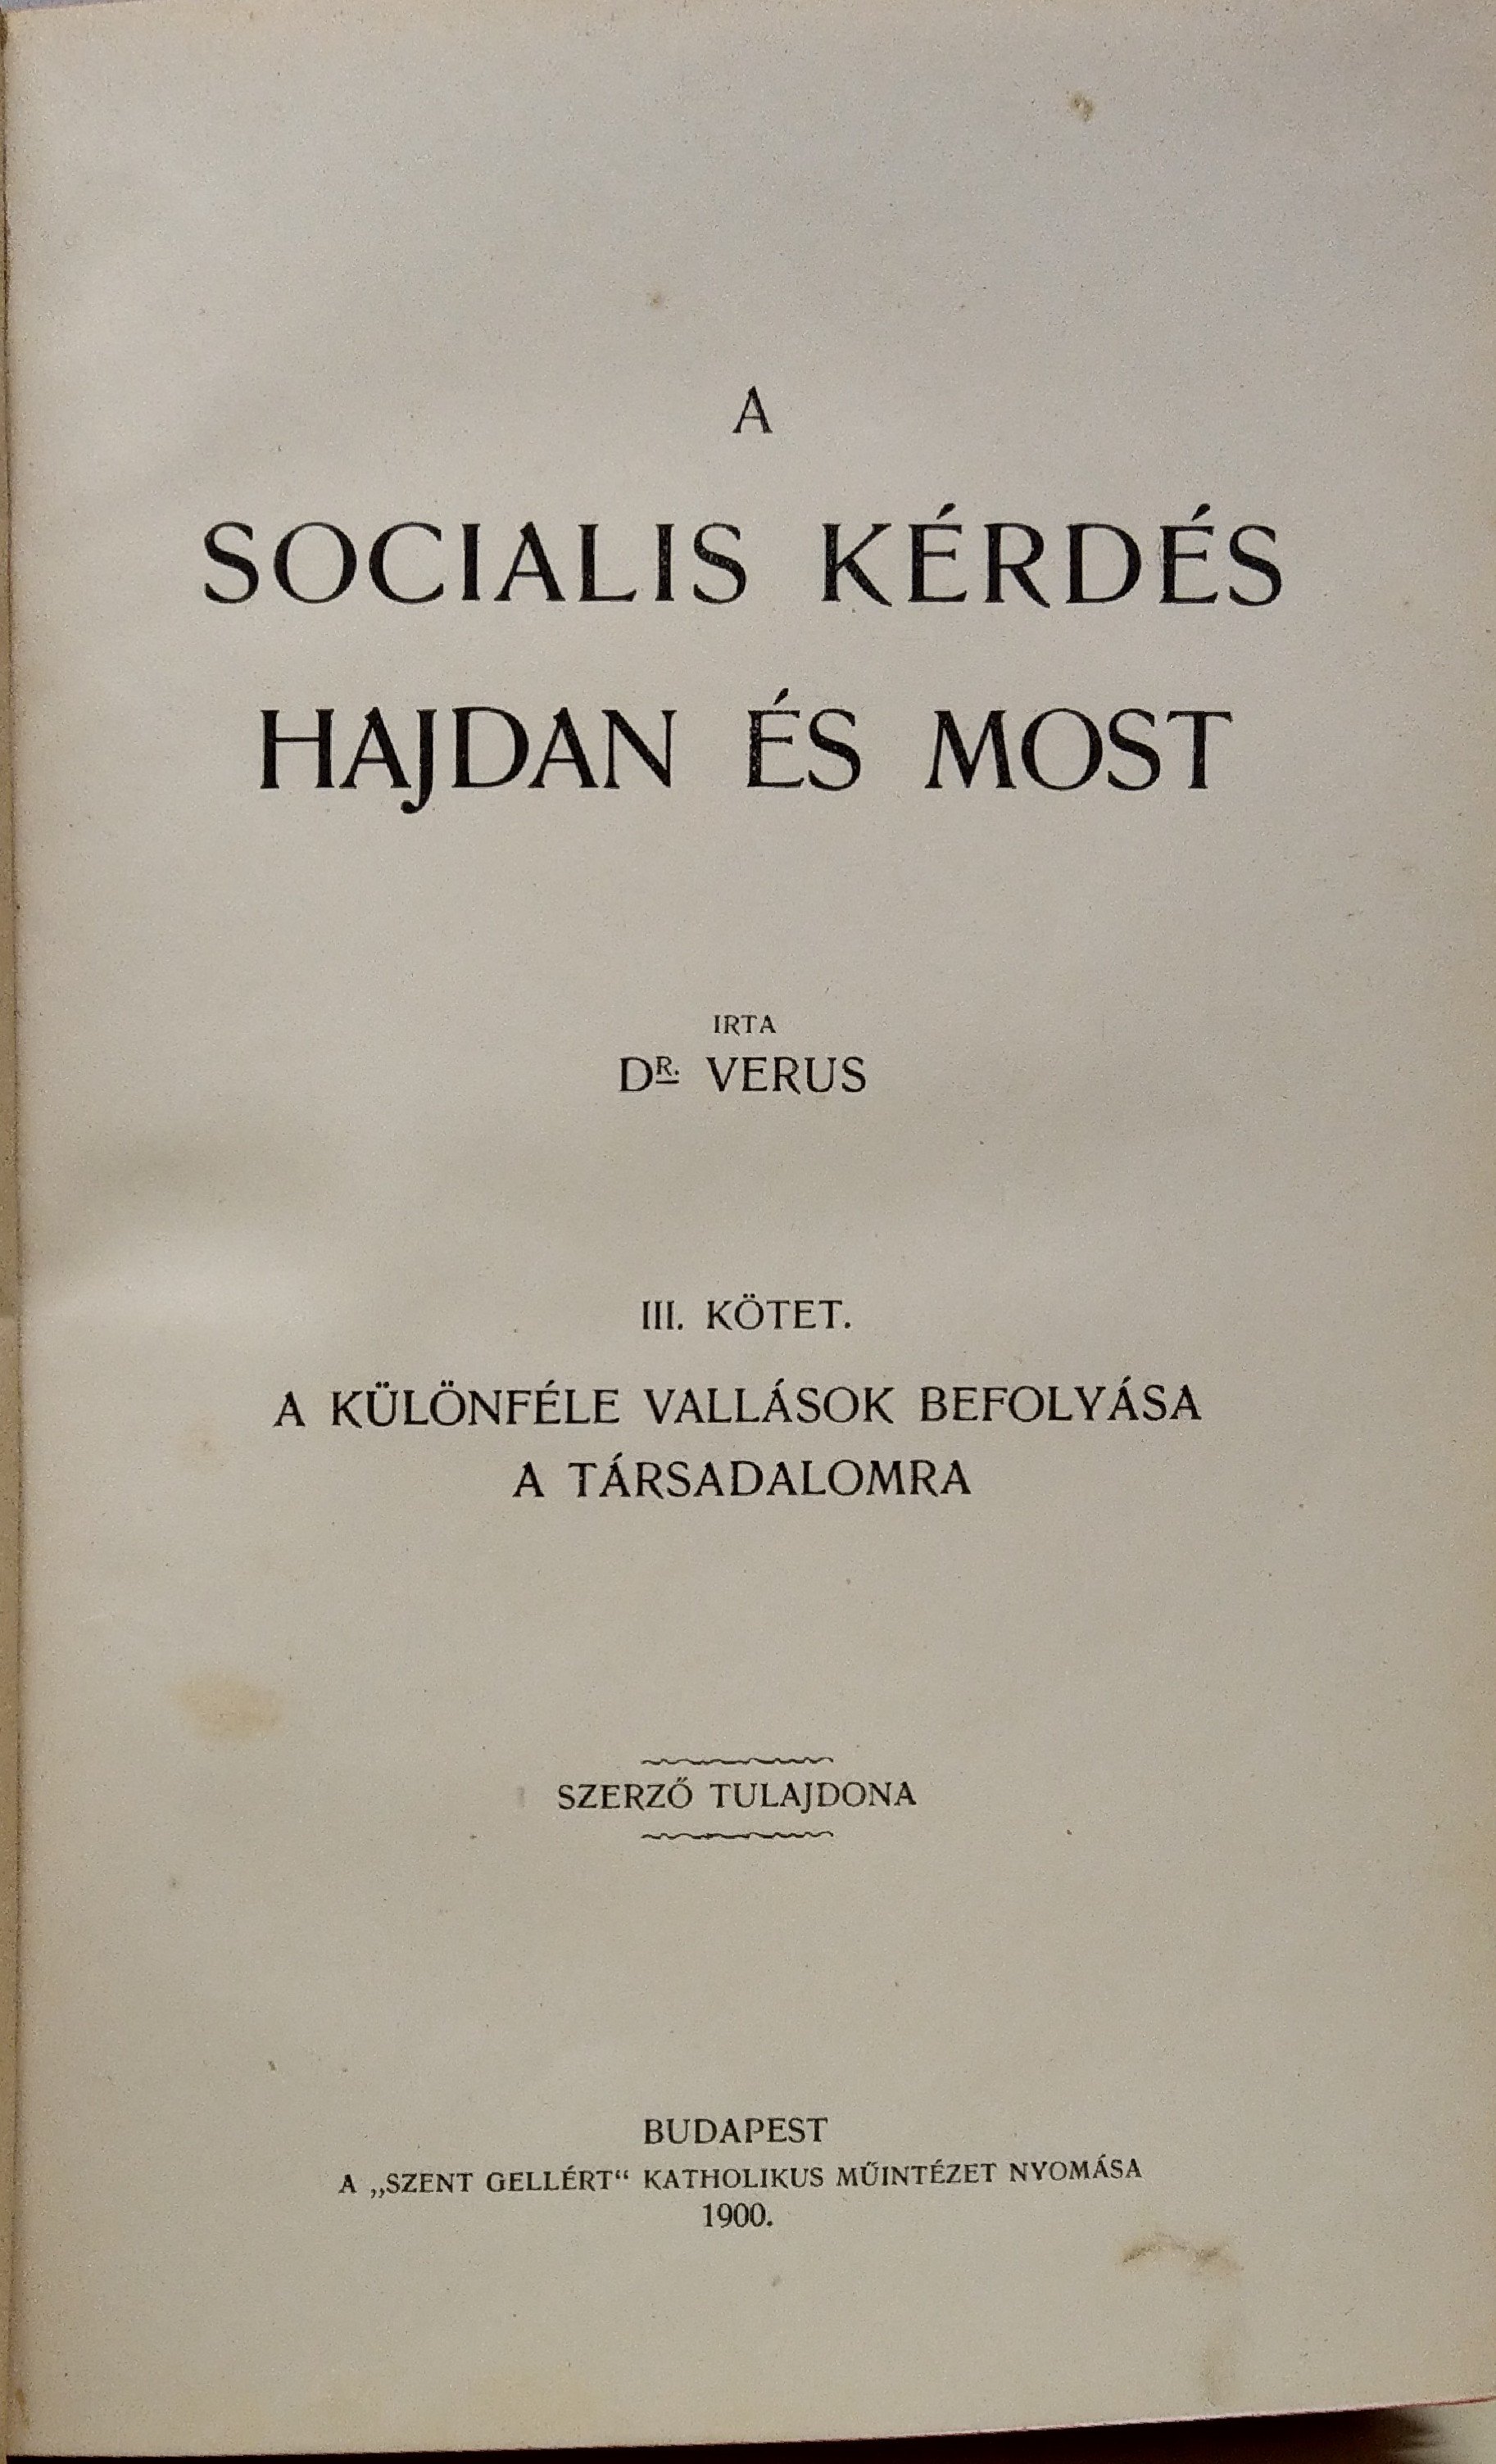 (ZIMÁNDY Ignác), Dr. Verus: A socialis kérdés hajdan és most 3. kötet (Rippl-Rónai Múzeum CC BY-NC-ND)